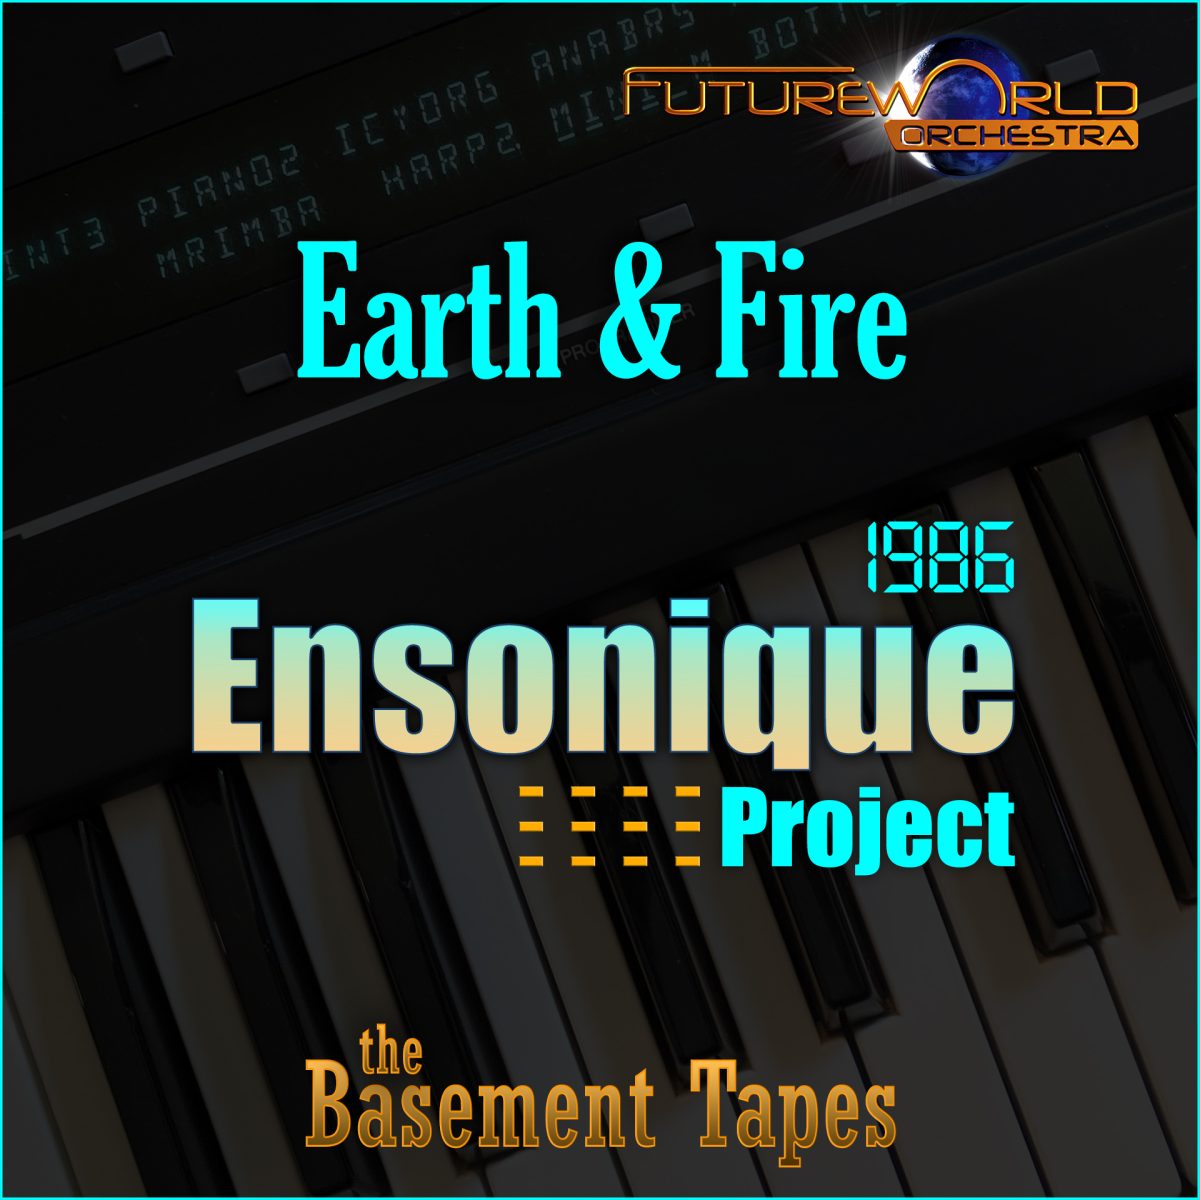 Ensonique - Playlist Image - Earth & Fire